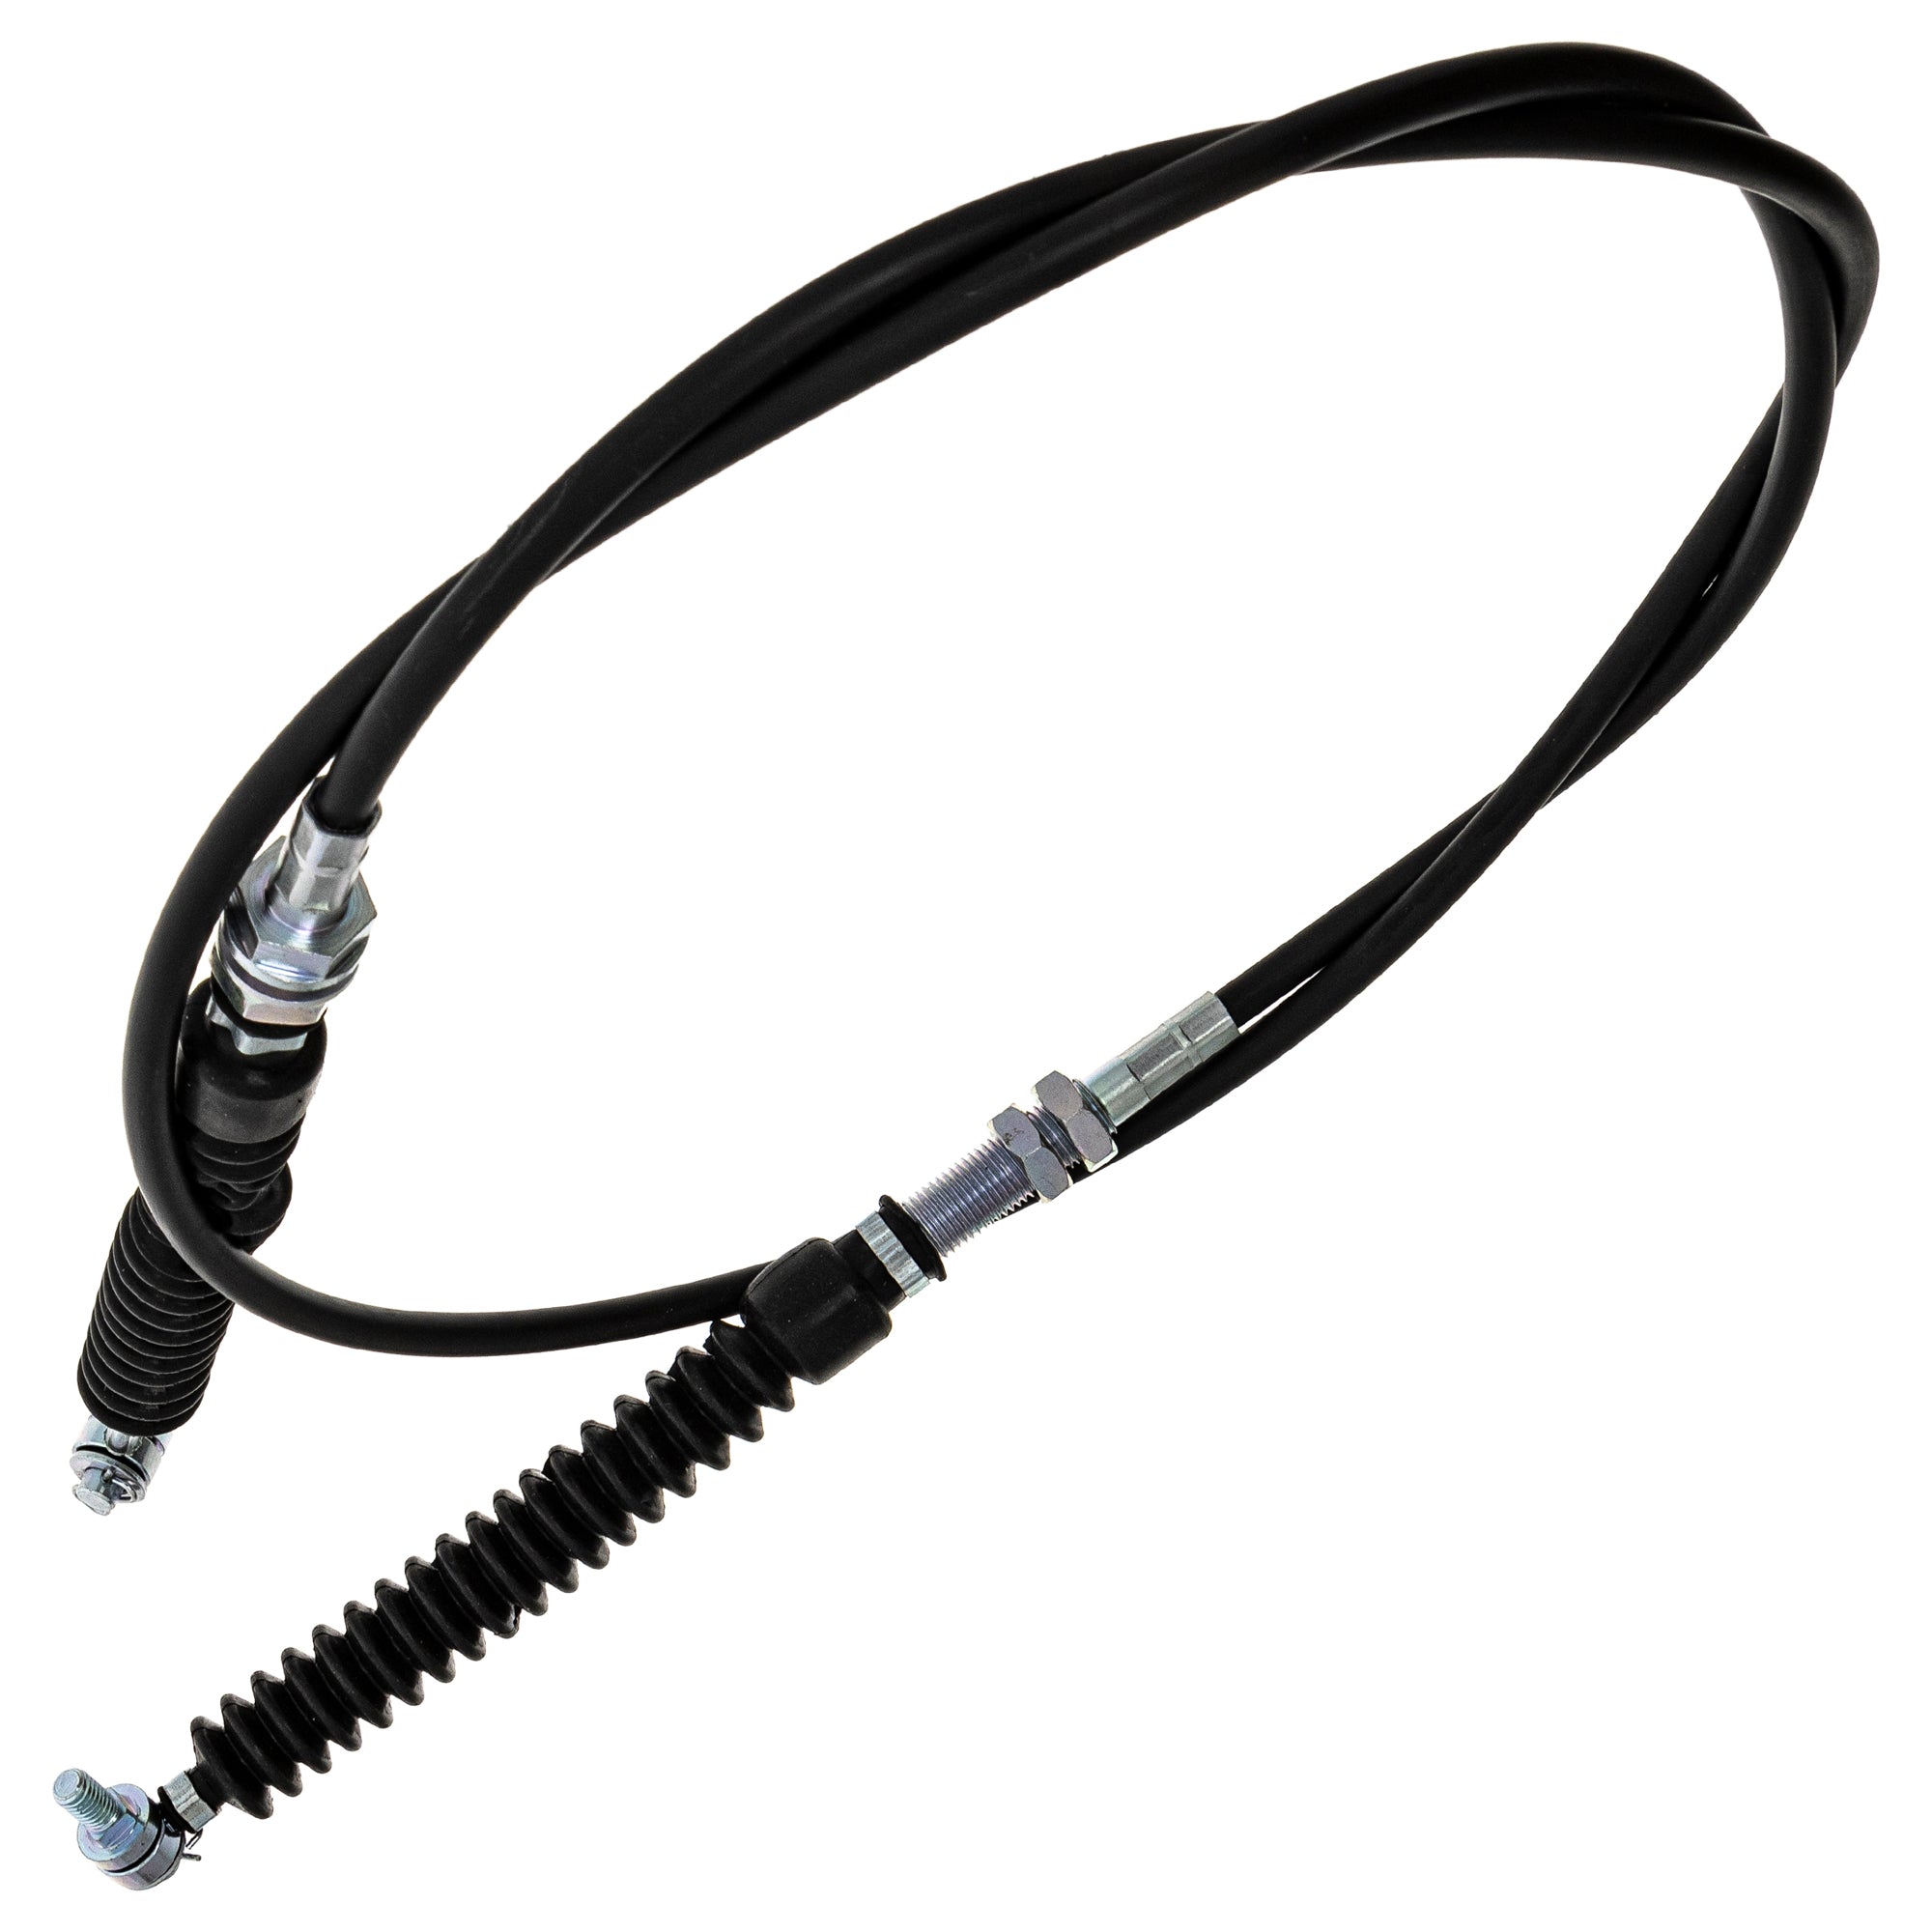 Shifter Cable for Polaris Ranger 500 700 XP 700 EFI 7081209